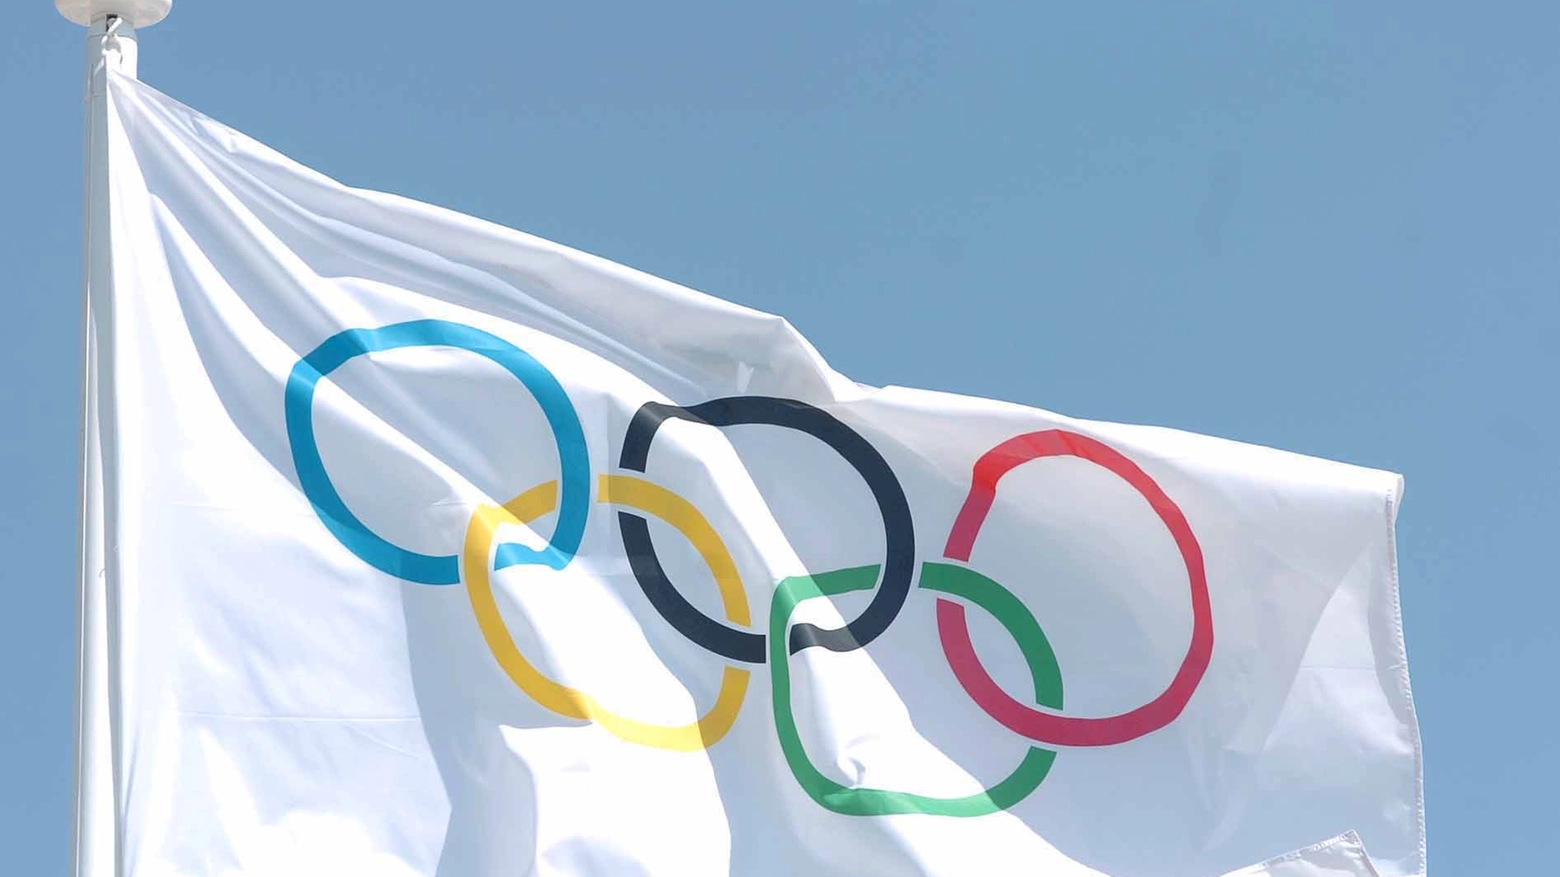 Bandiera con il simbolo delle Olimpiadi